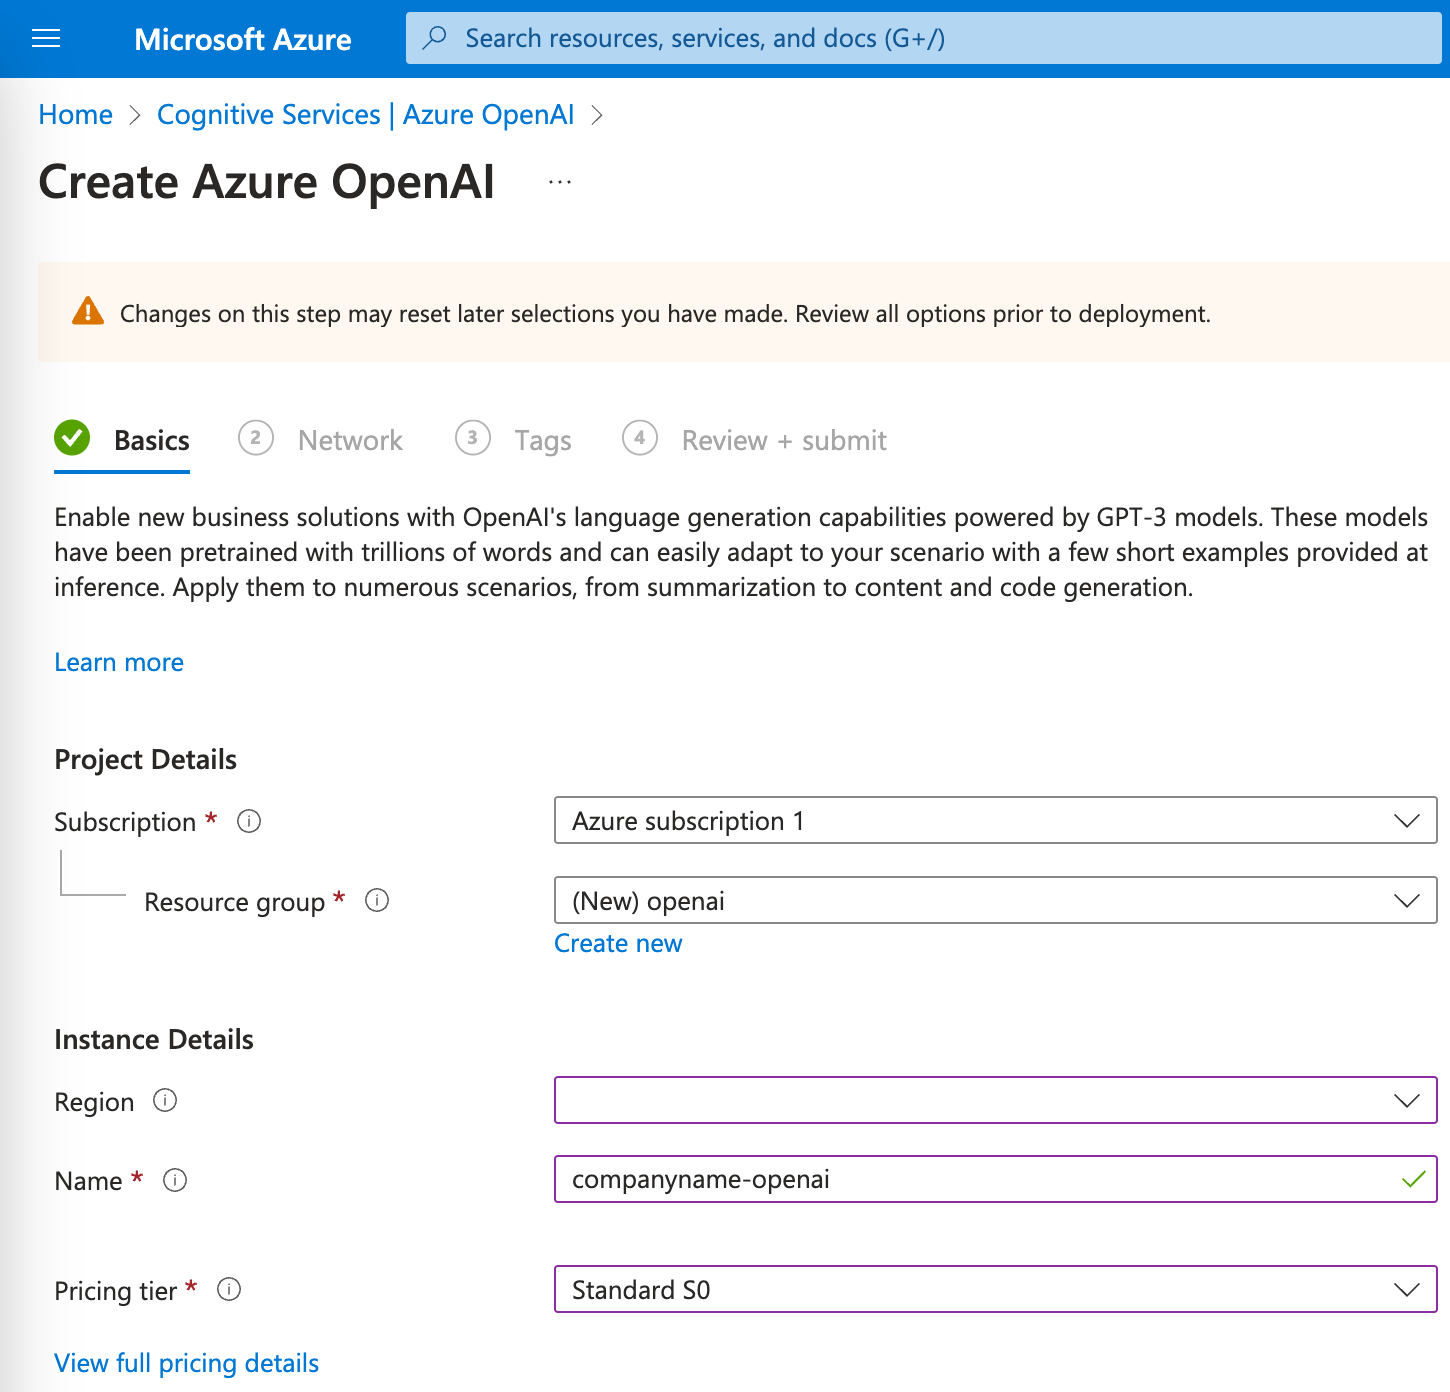 Create Azure OpenAI Basics